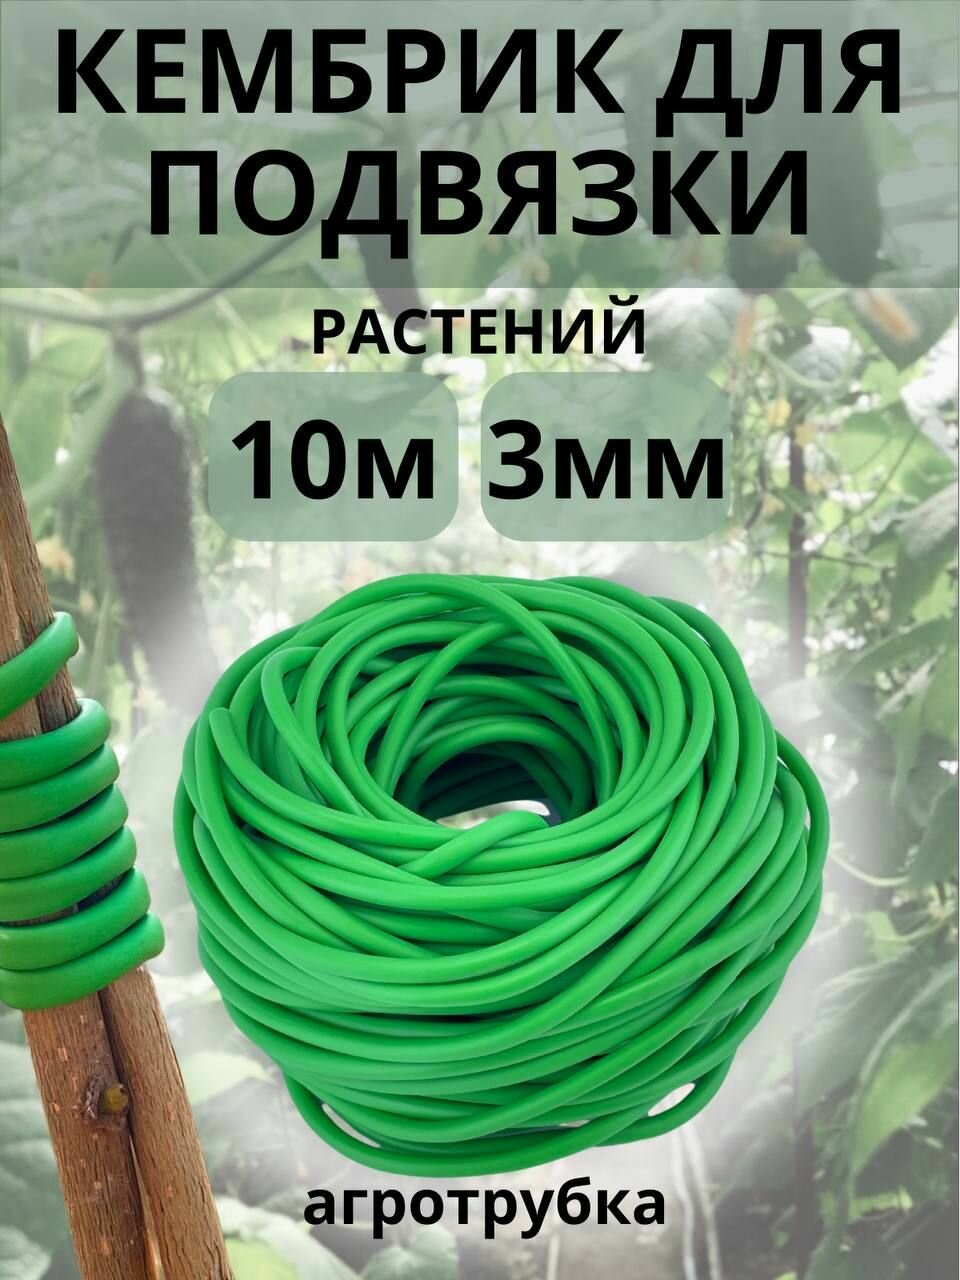 Подвязка для растений Кембрик 3 мм/ 10 метров